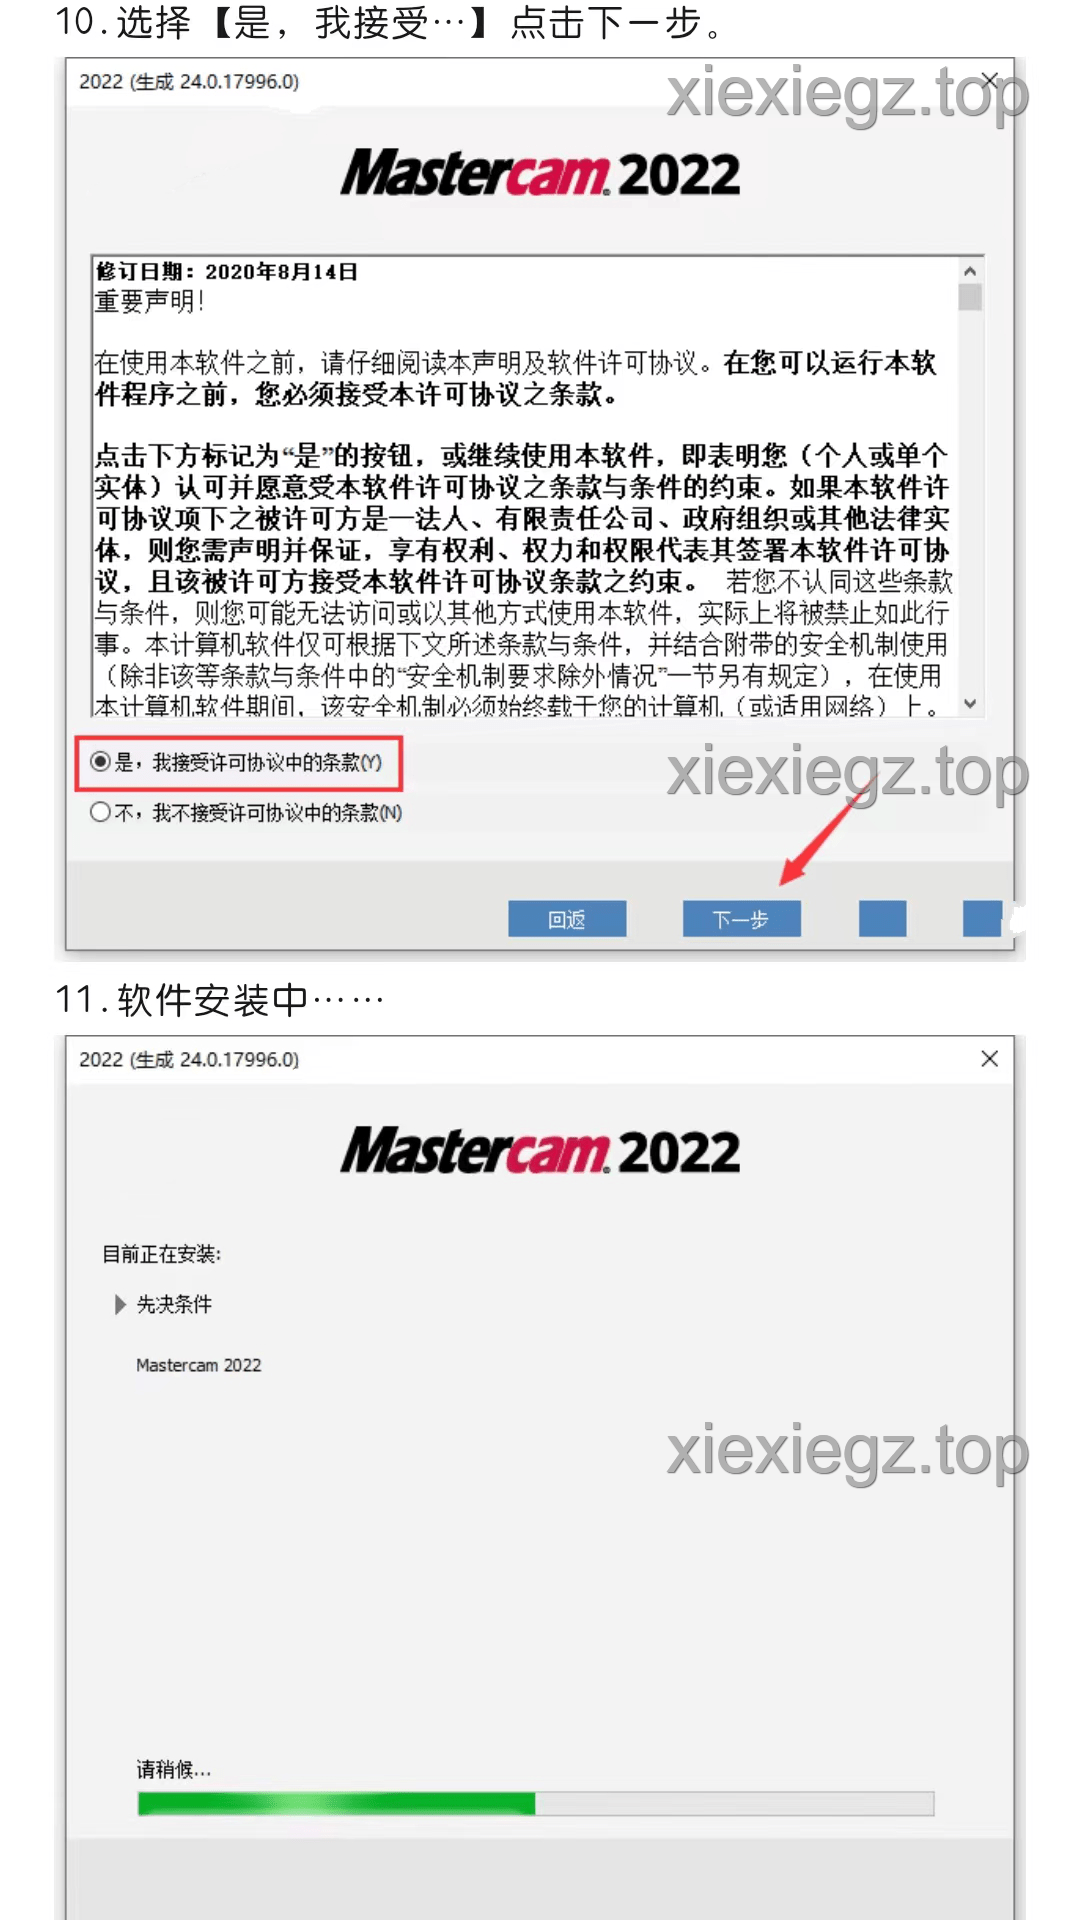 【适用型CAD/CAM设想辅助软件】Mastercam 2022最新版详细安拆步调